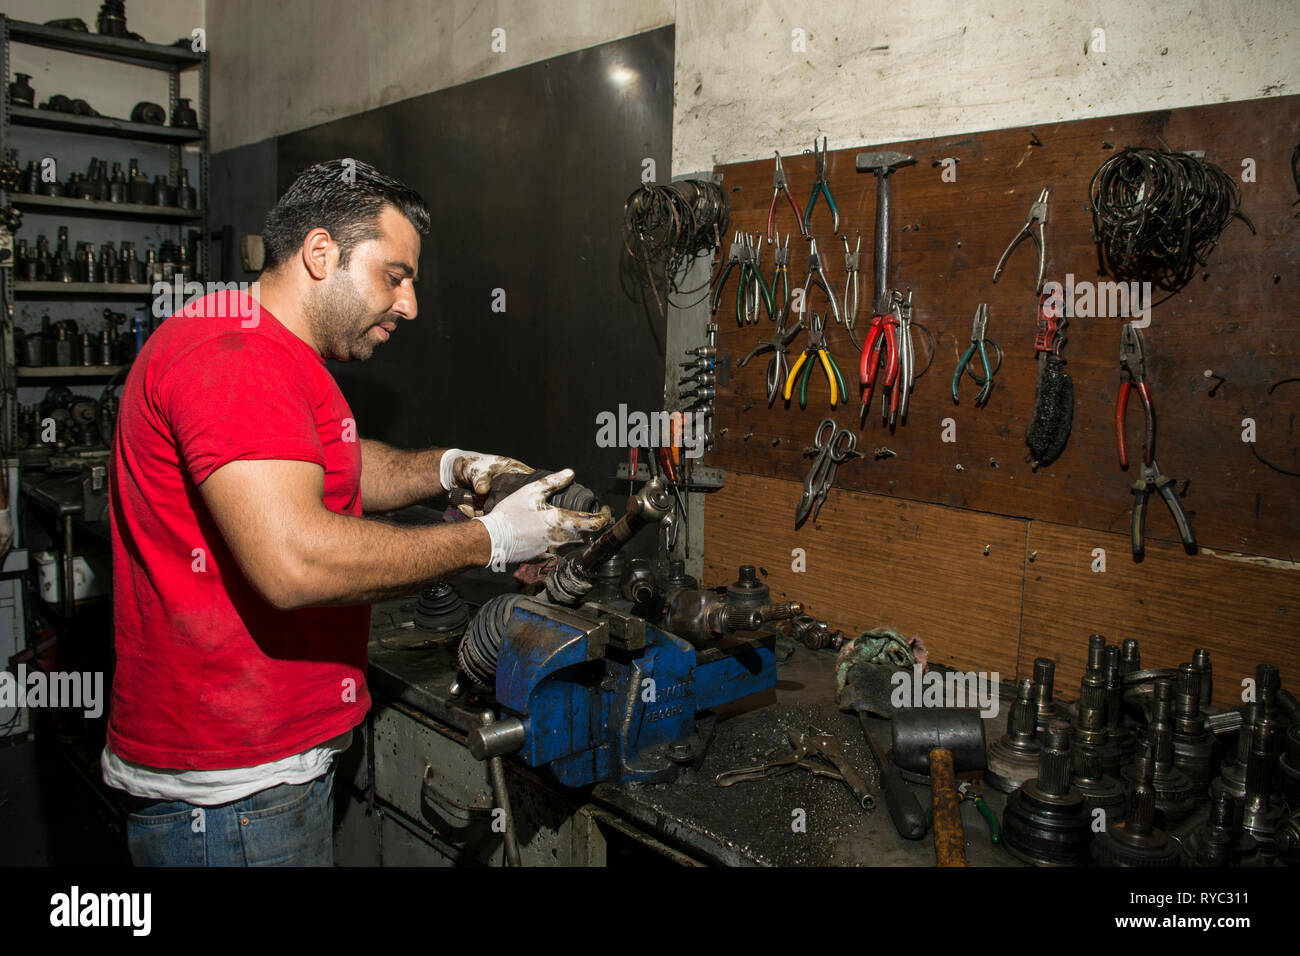 Mechanic working in garage Stock Photo